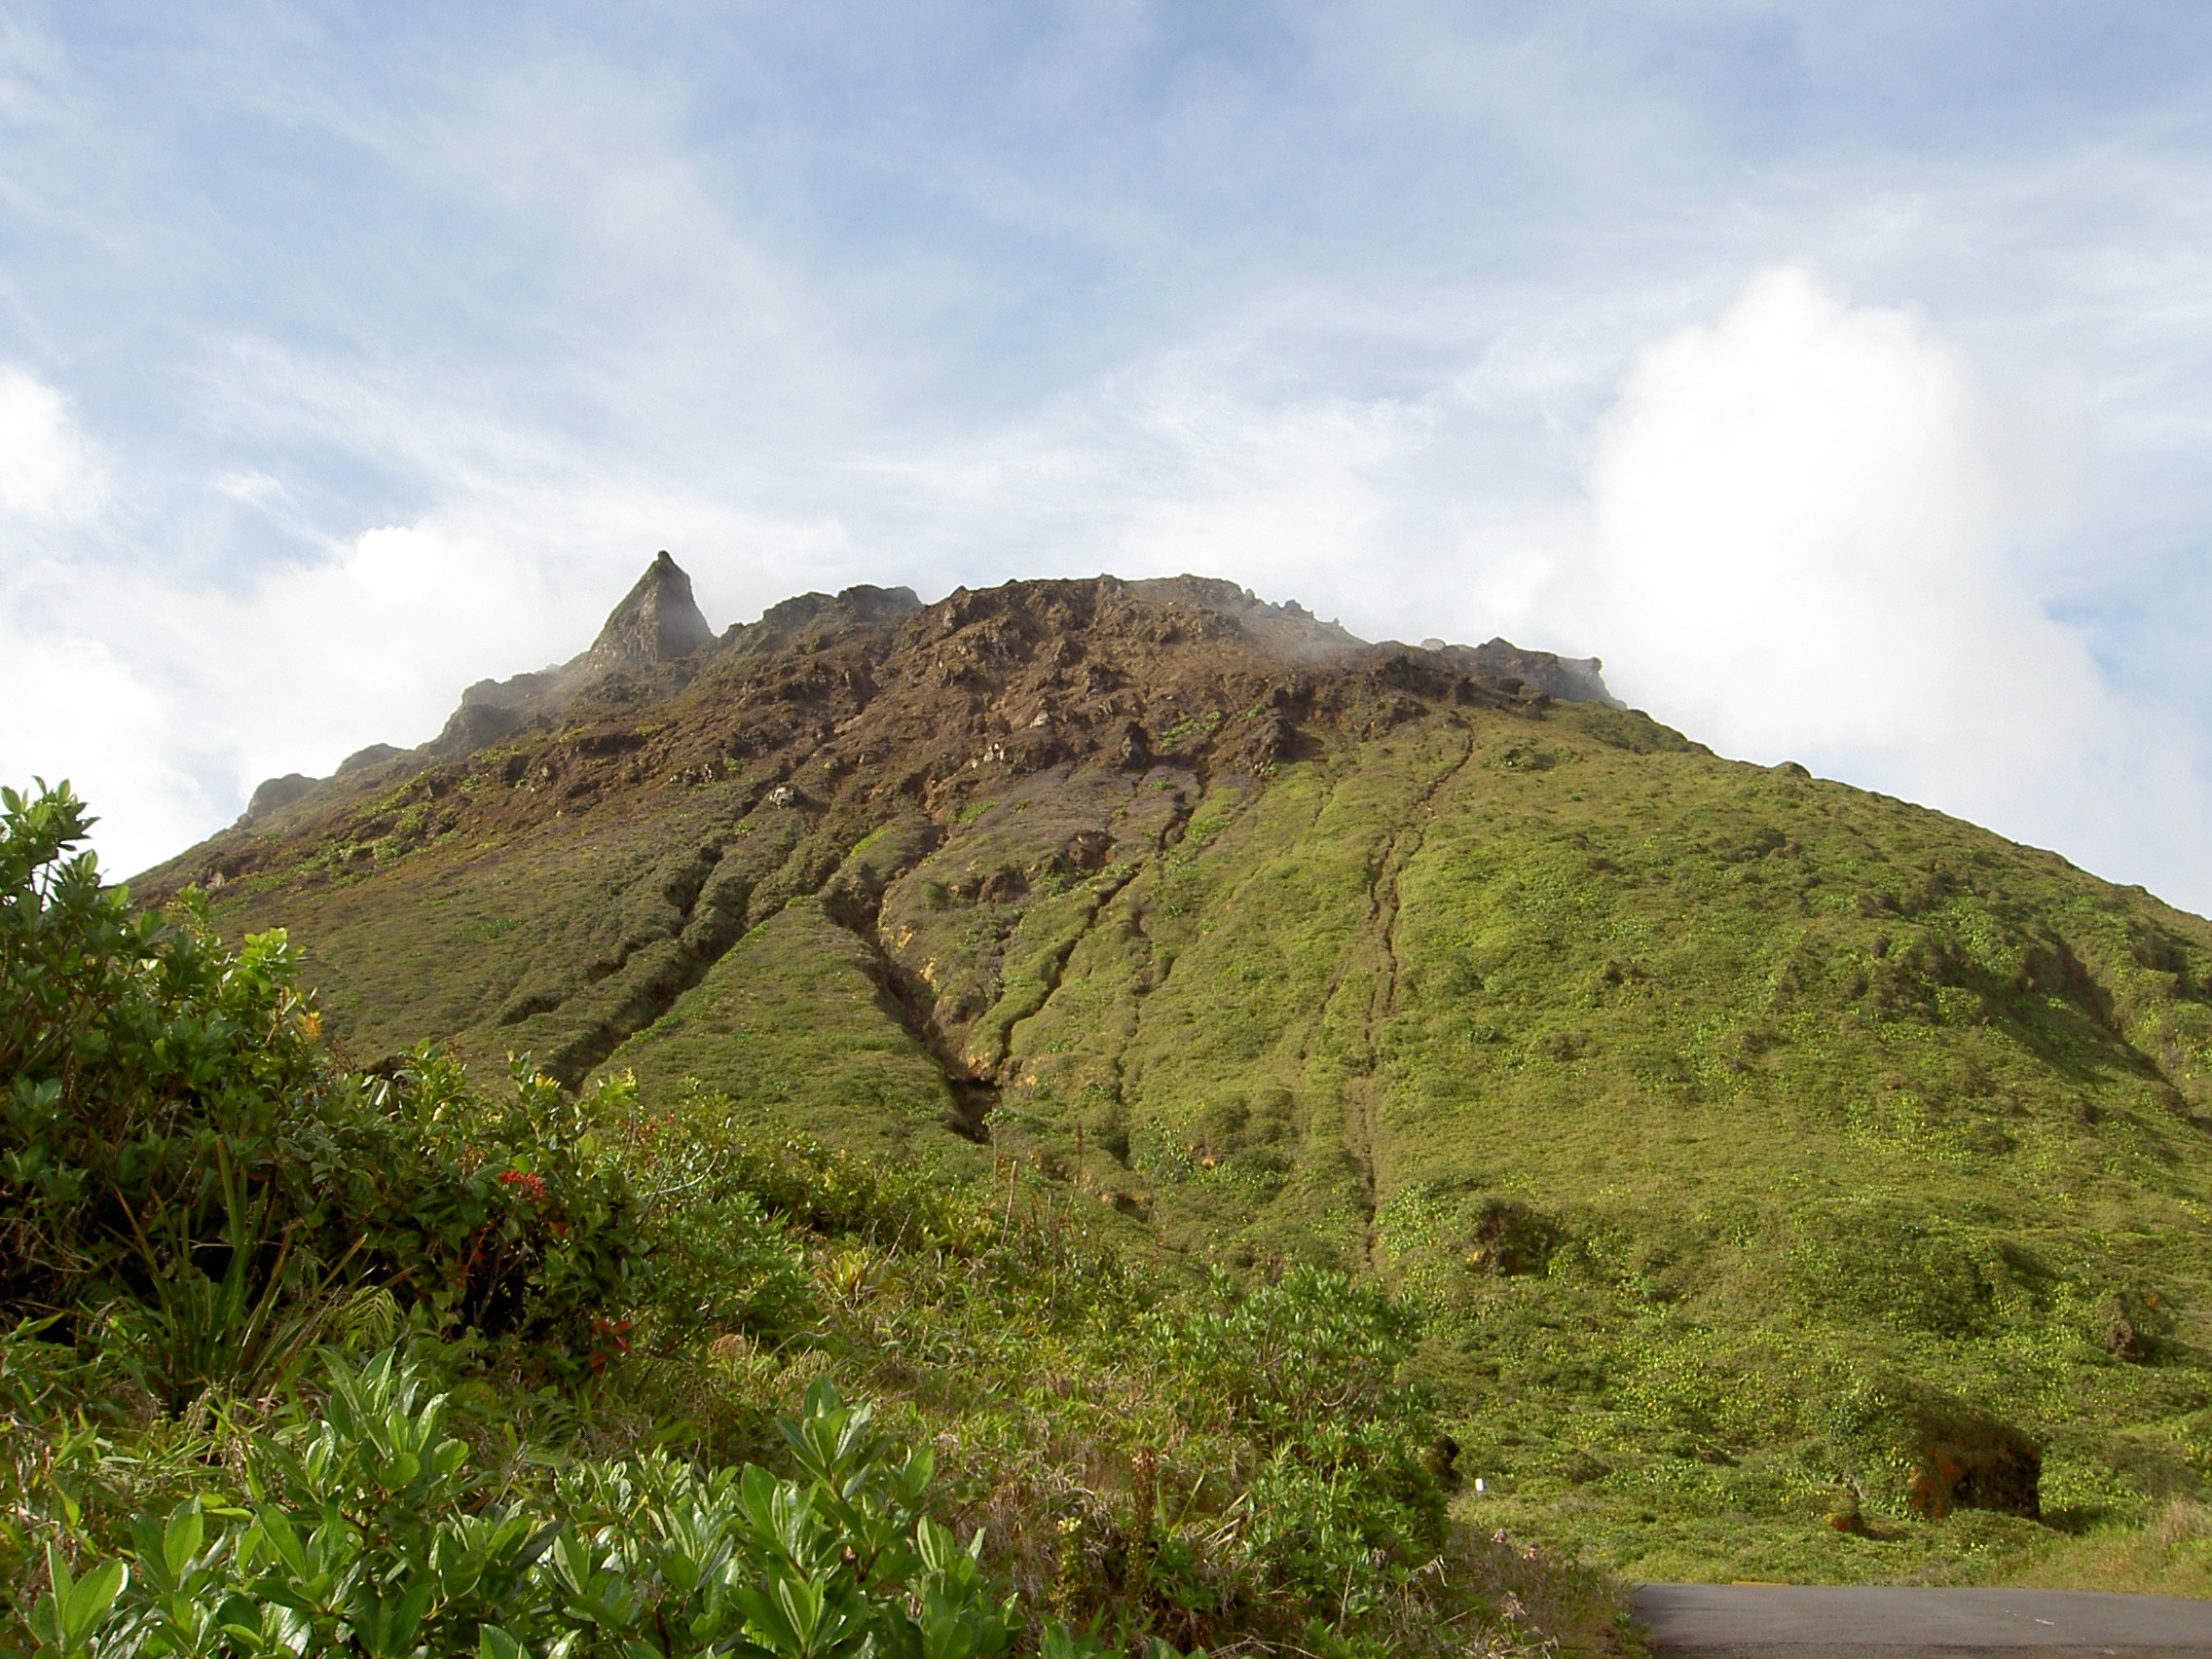     412 séismes volcano-tectoniques sous le volcan de la Soufrière en novembre

